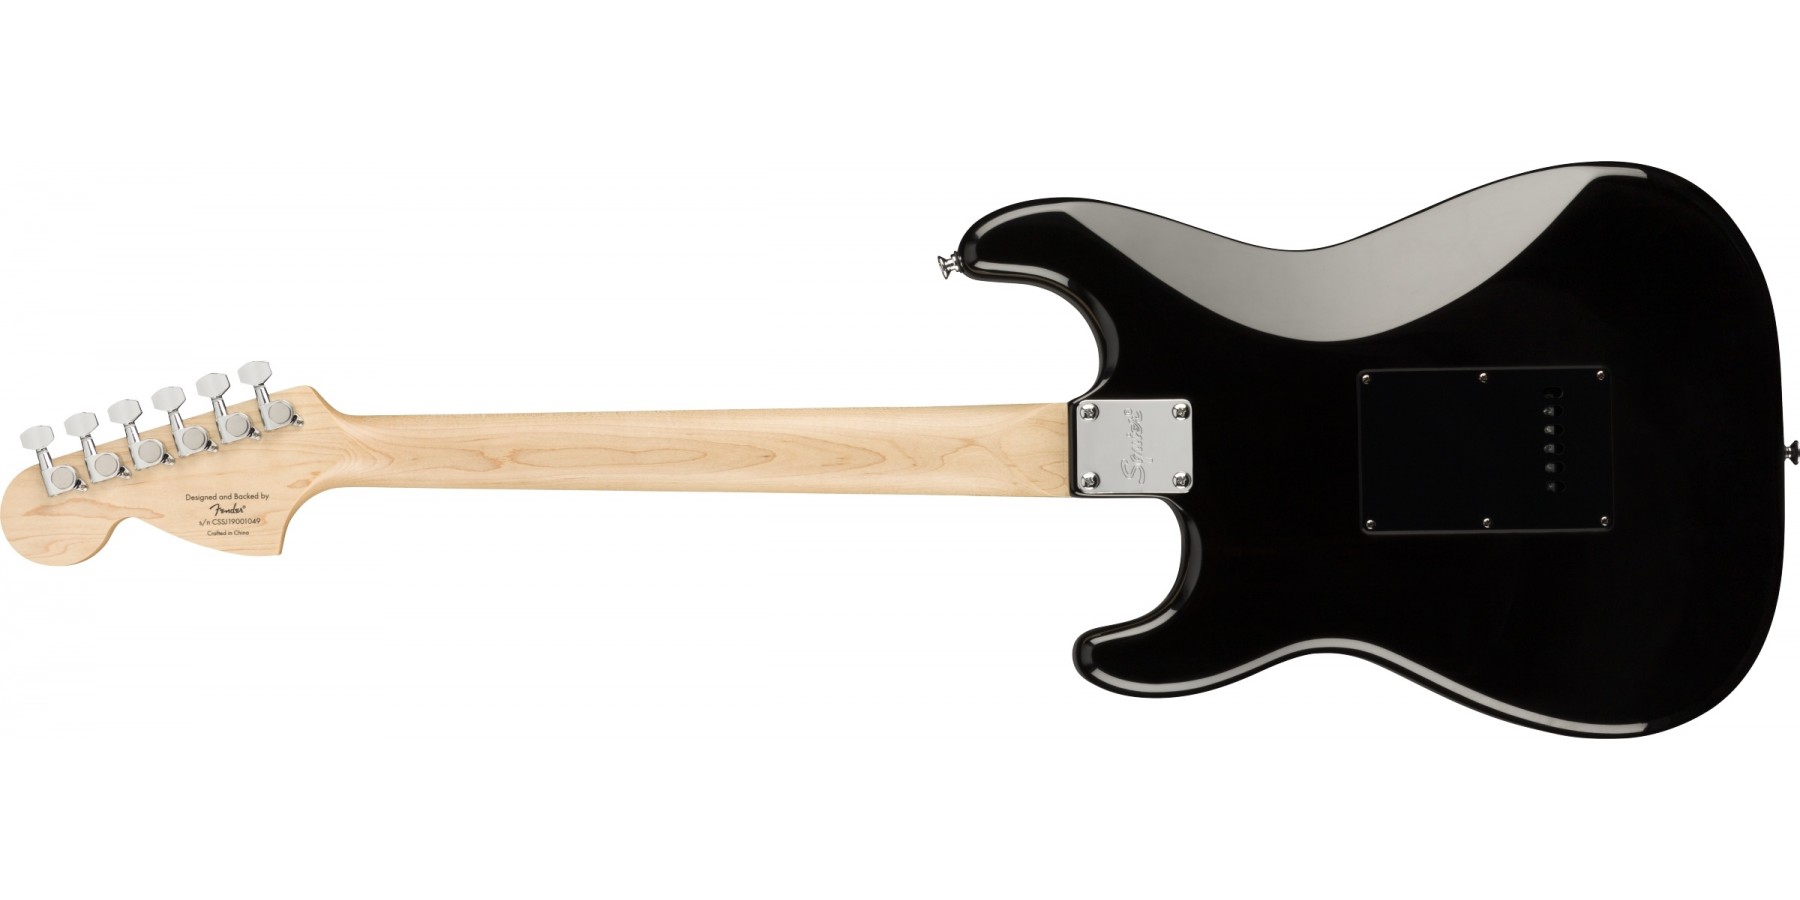 Squier Strat Affinity Black Pearl Pickguard Fsr Ltd Sss Trem Lau - Black - Elektrische gitaar in Str-vorm - Variation 1